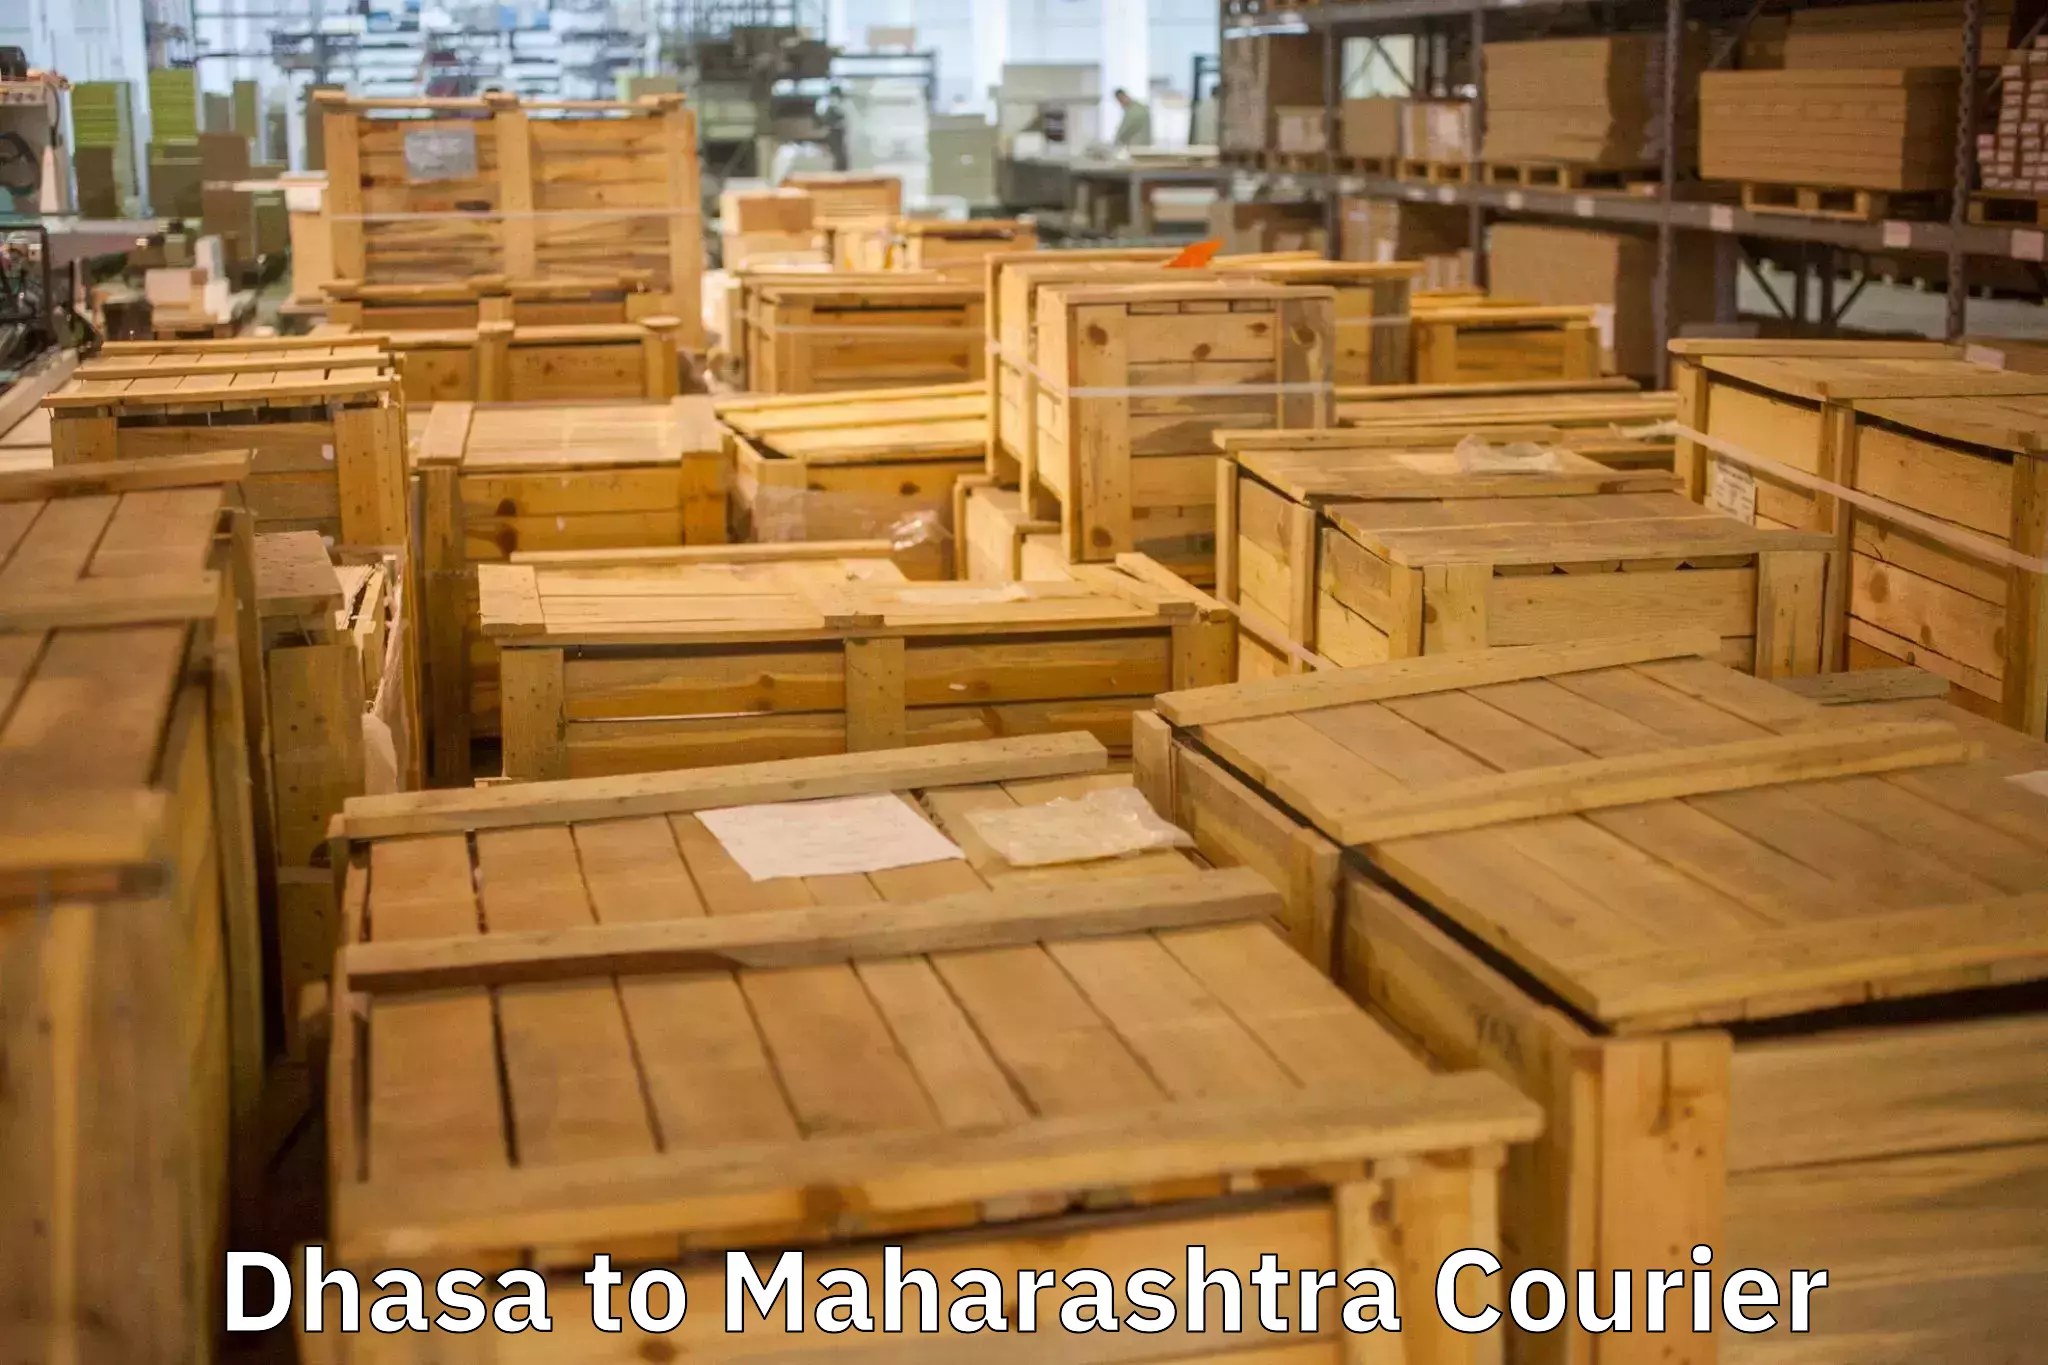 Home goods moving company Dhasa to Maharashtra